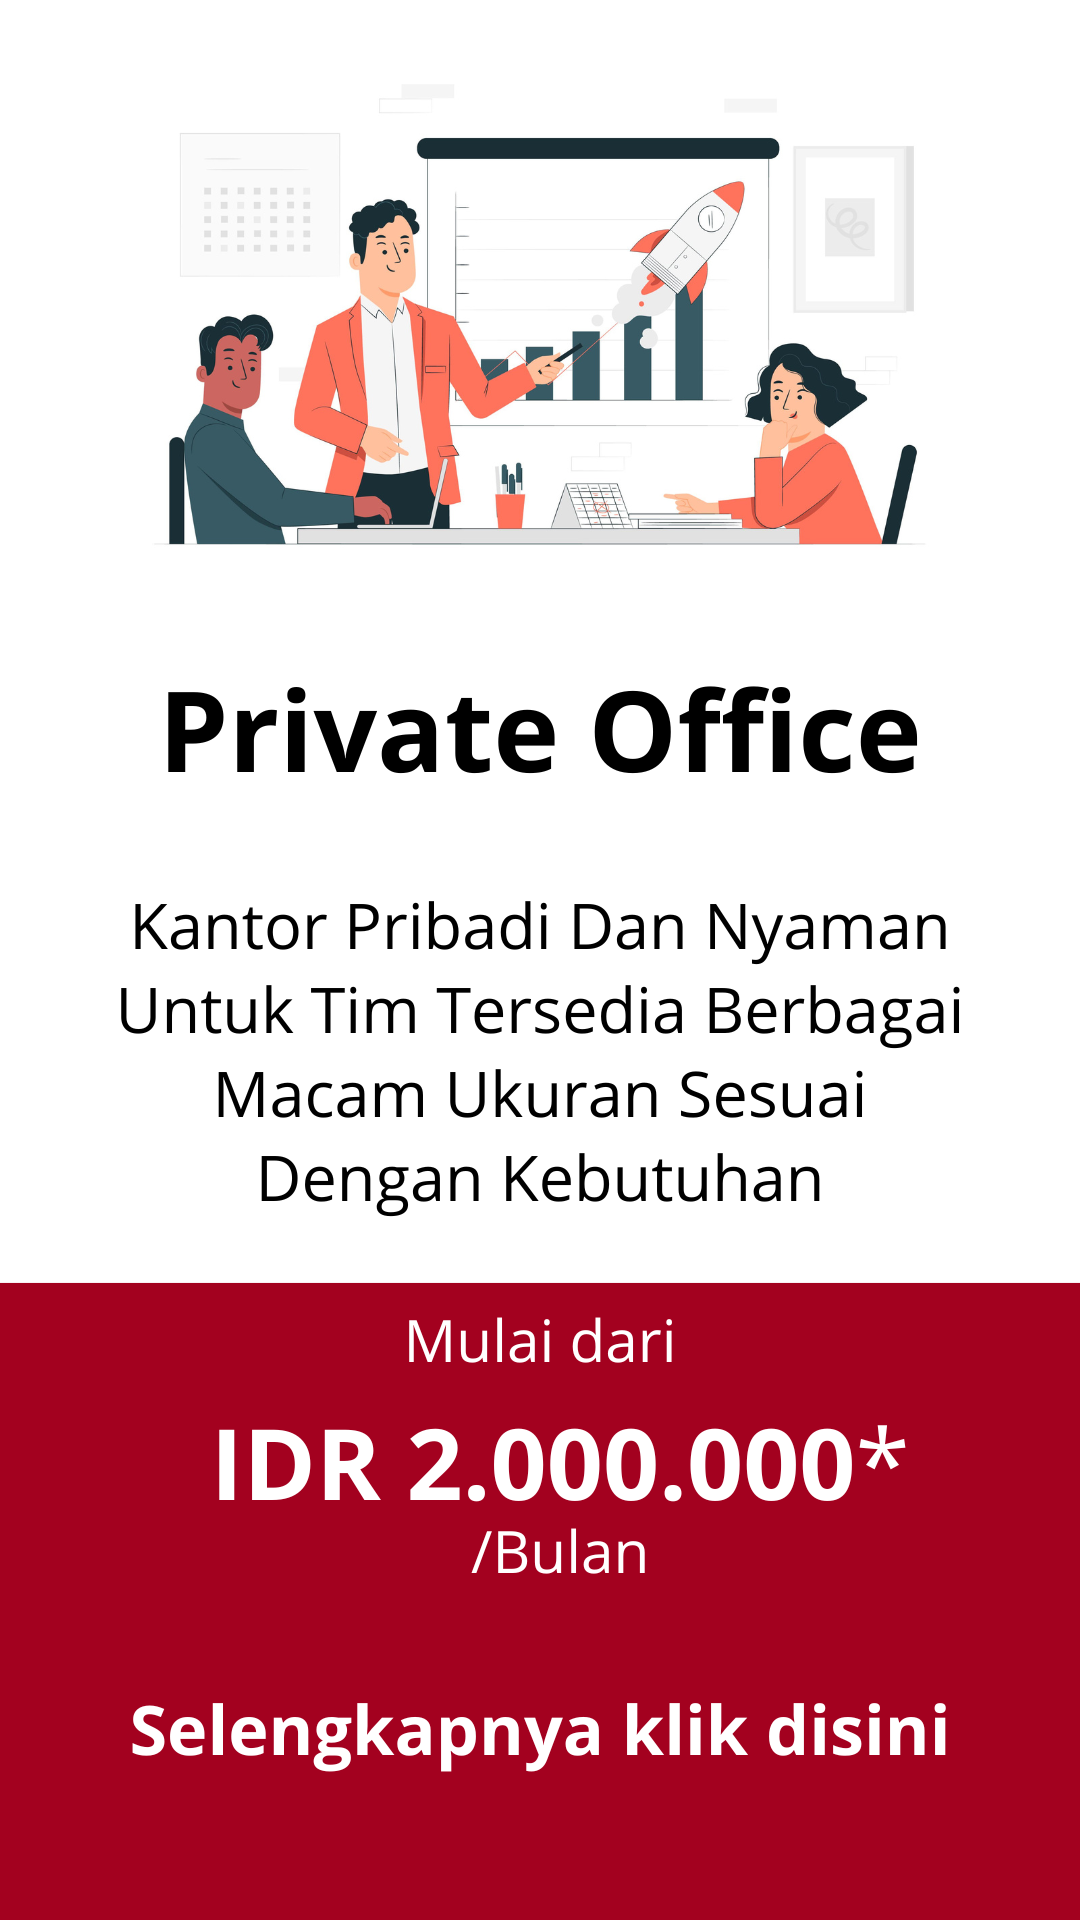 service-private